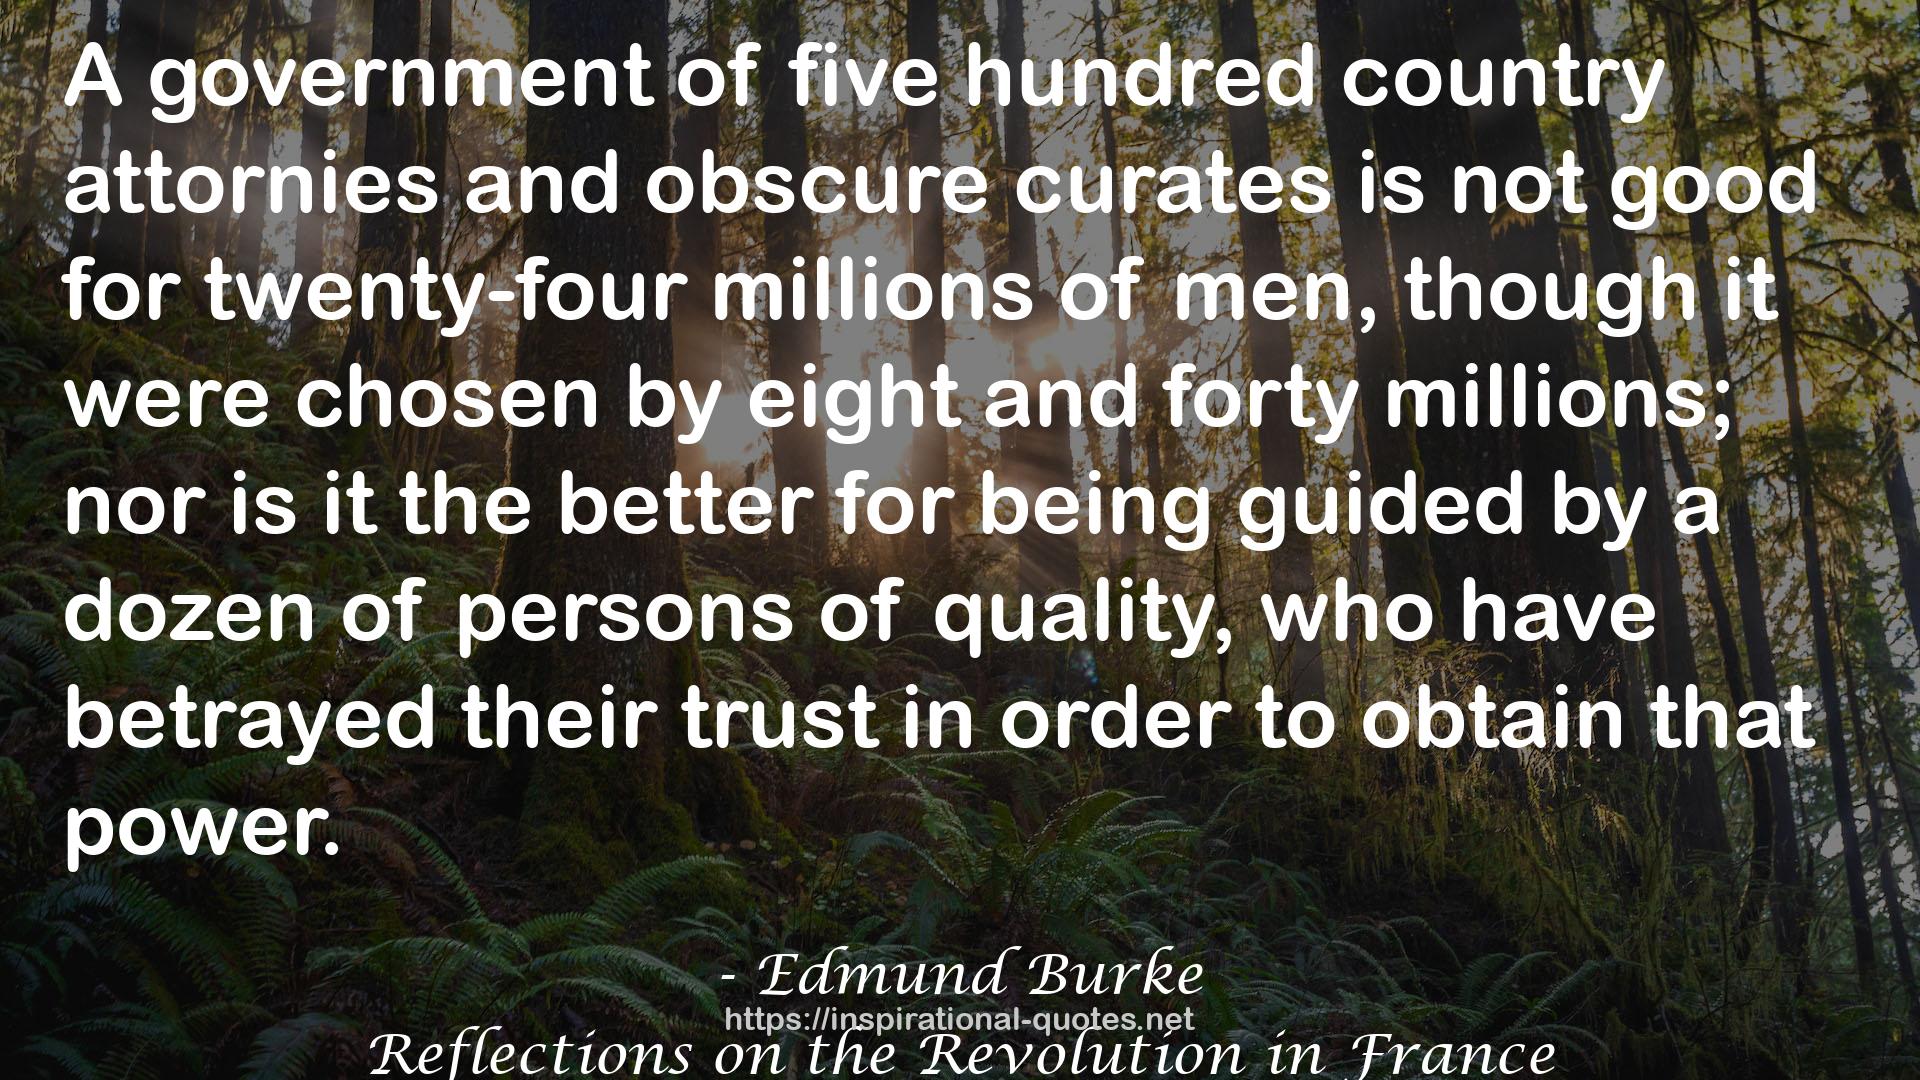 Edmund Burke QUOTES